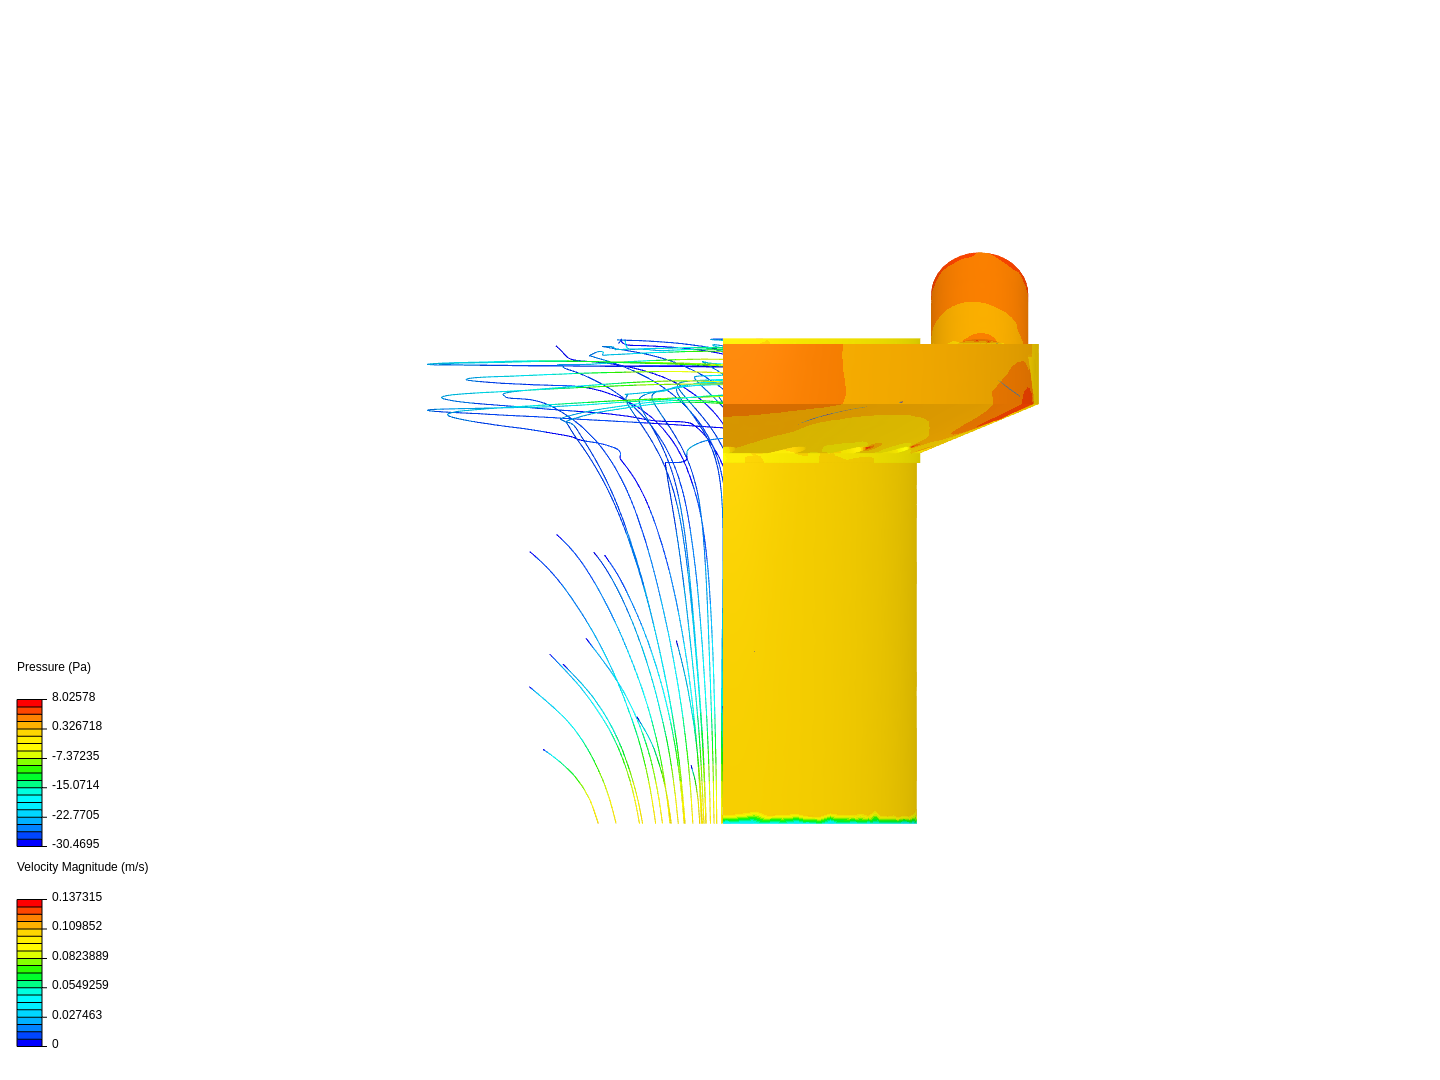 Turbine Simulation 1.3 (155 deg) image